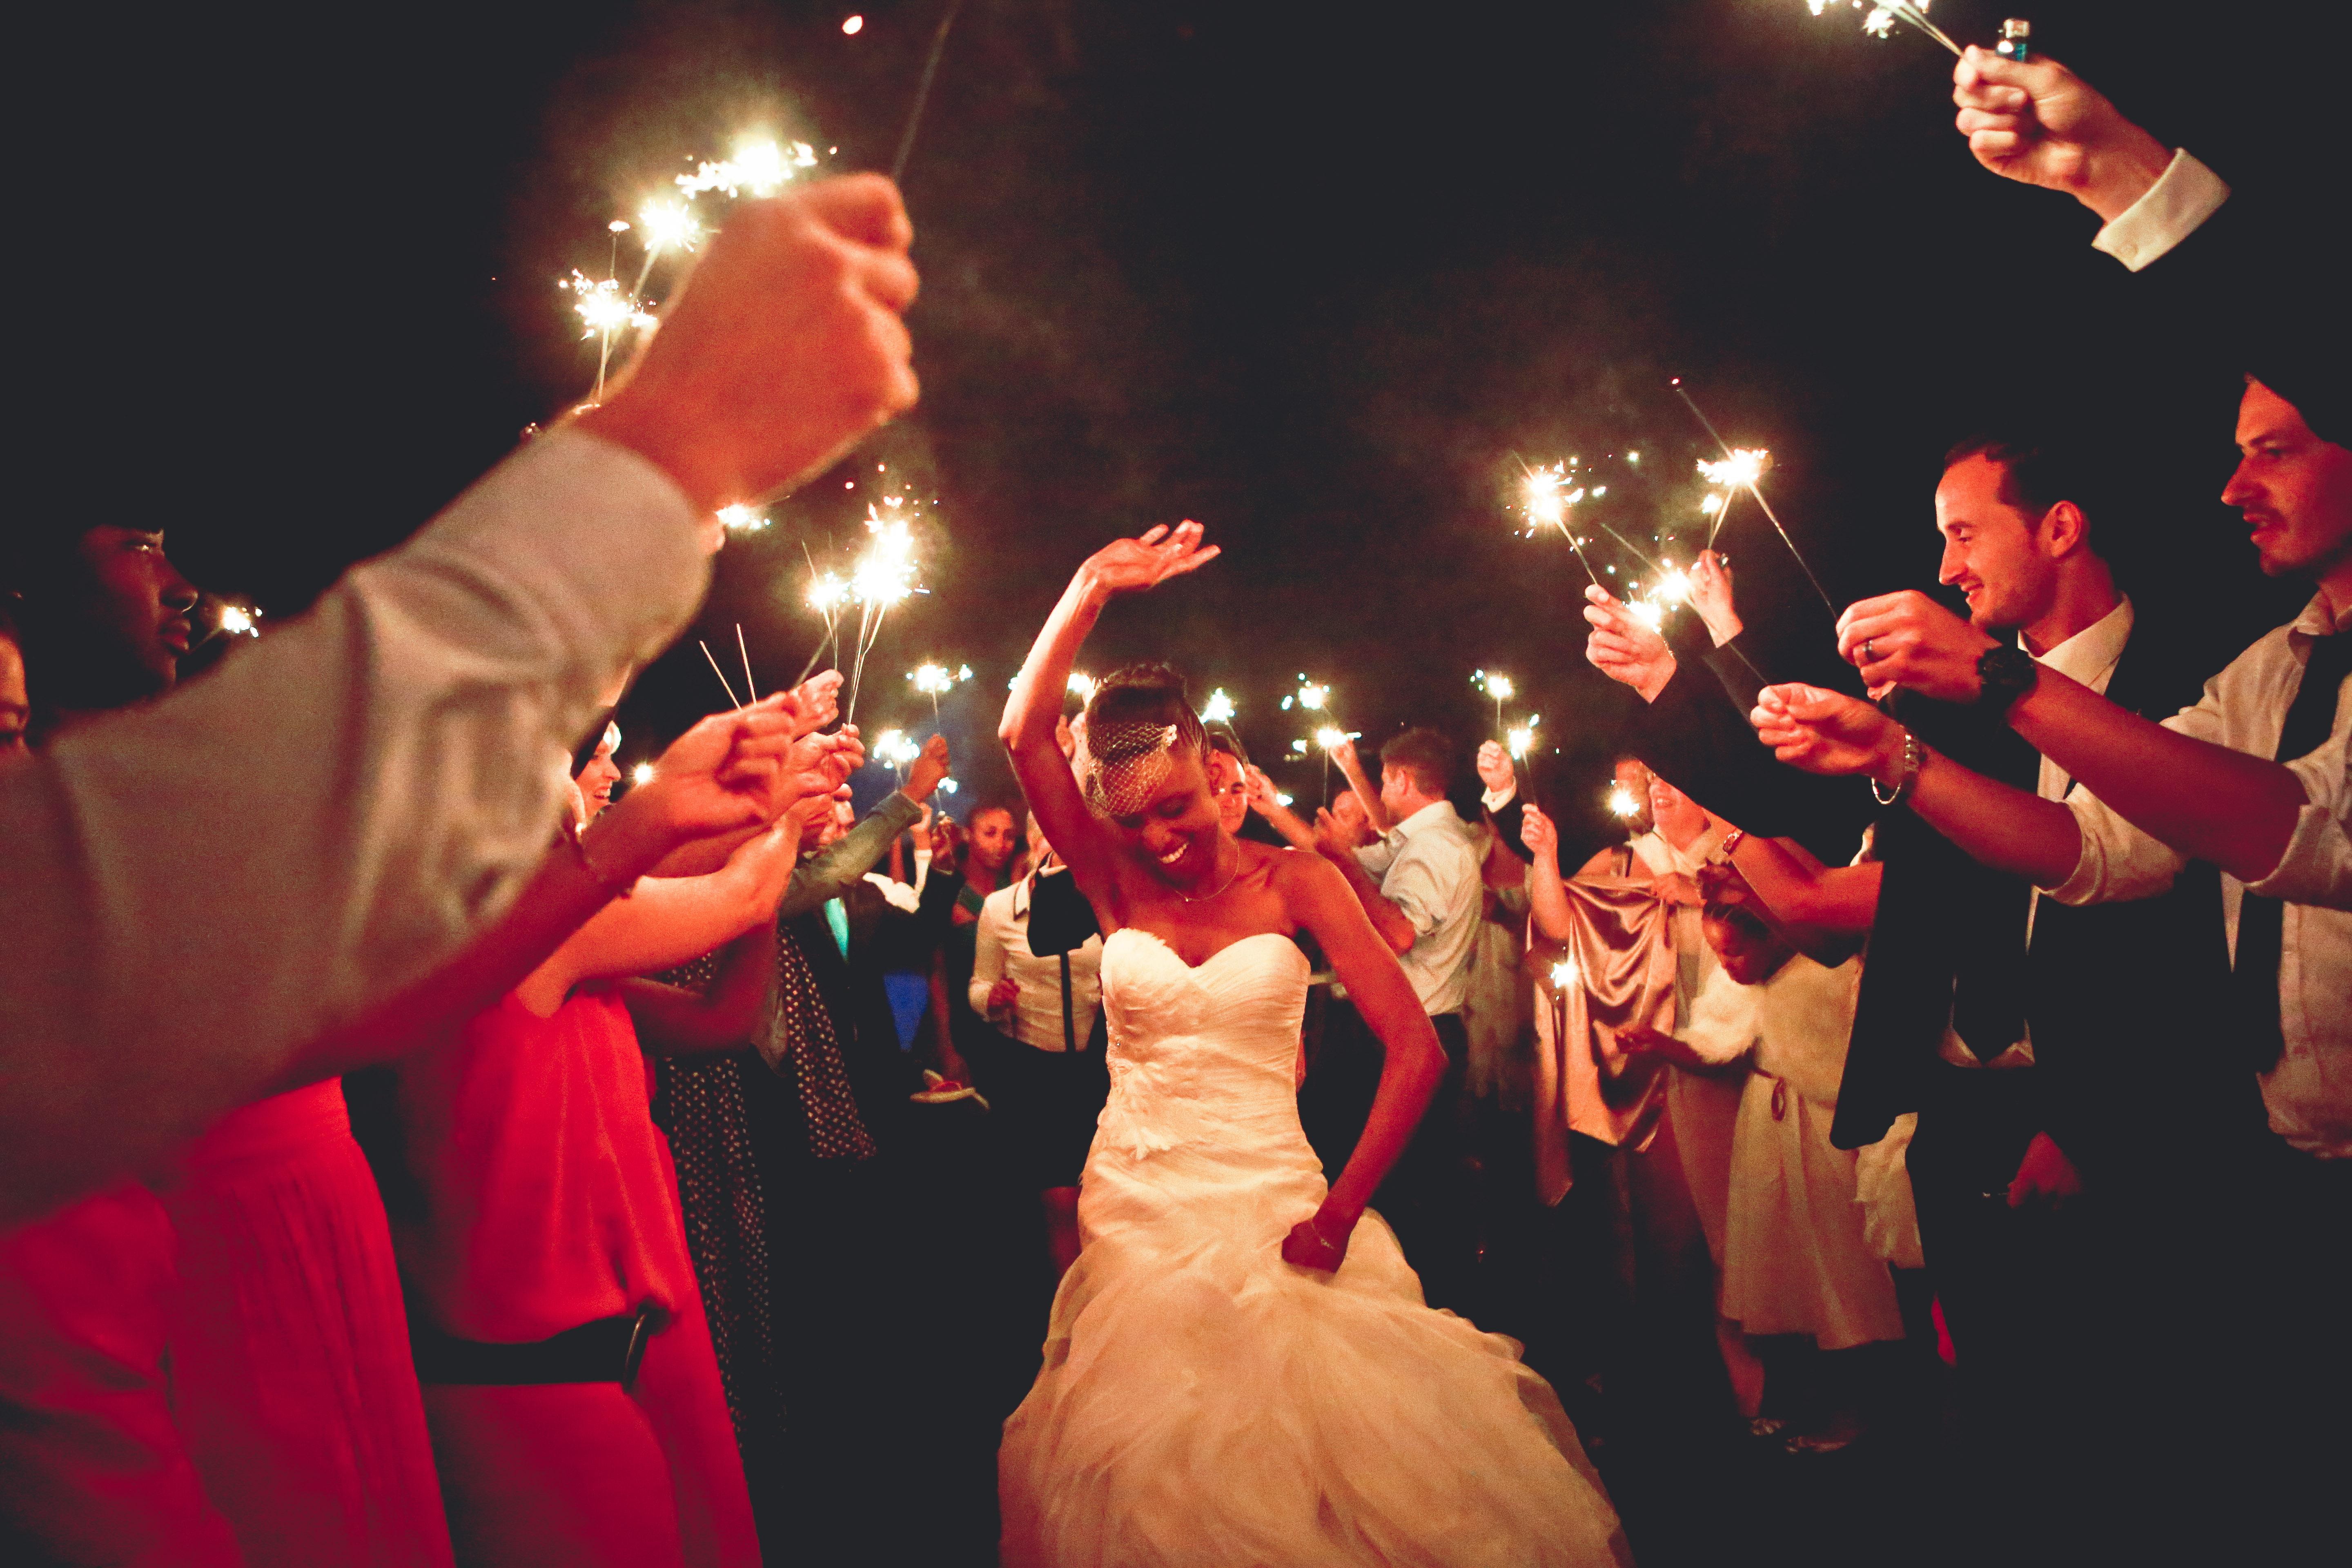 Cierges magiques et leurs jolis effets sur vos photos de mariage